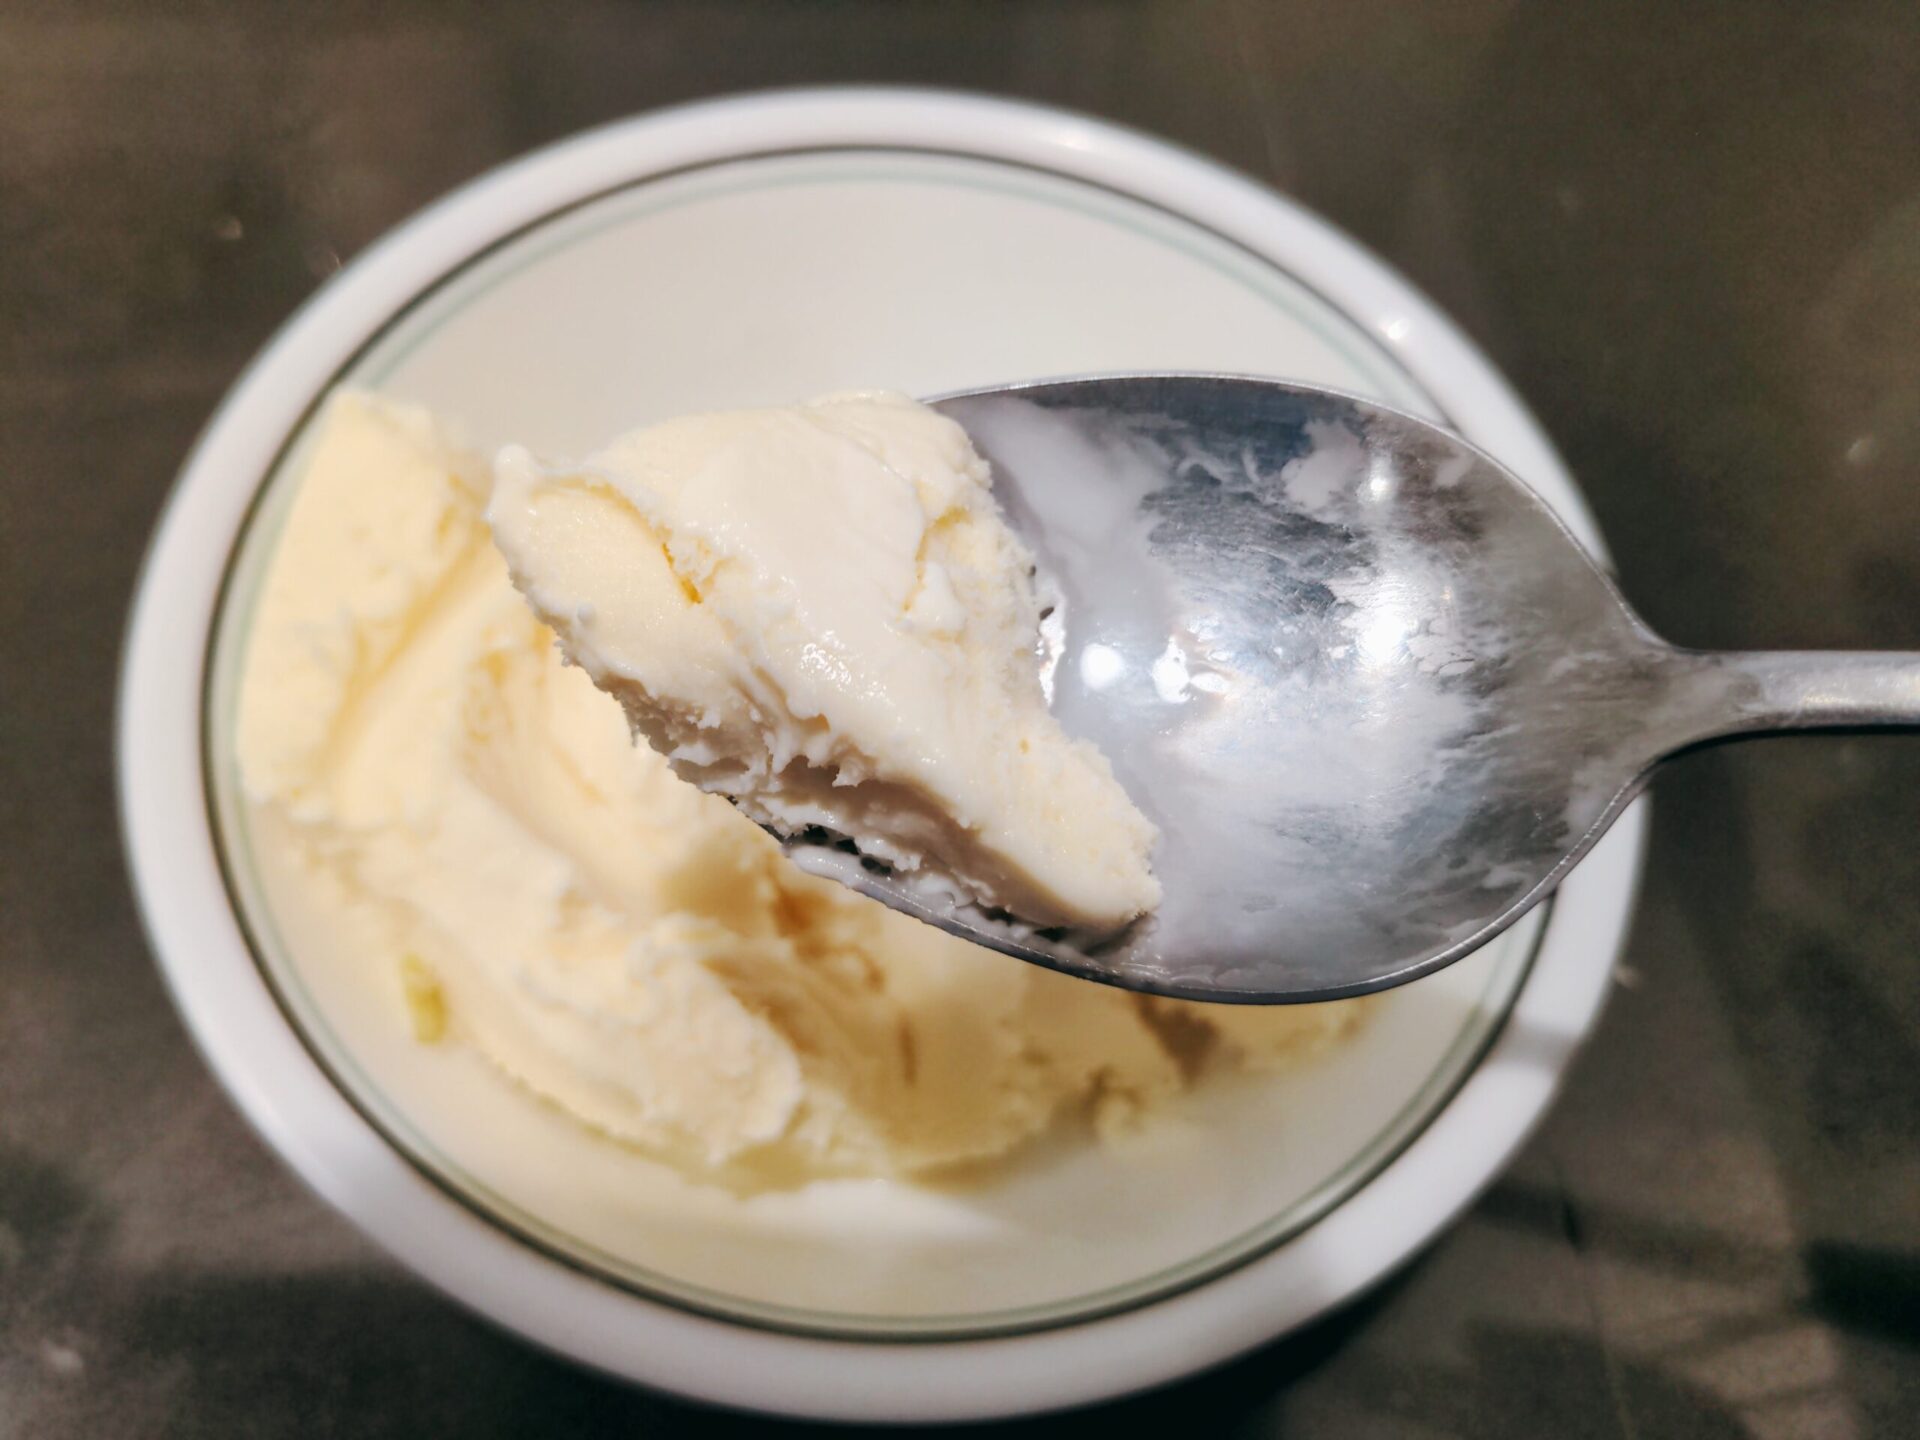 Costco Vanilla Ice Cream scaled